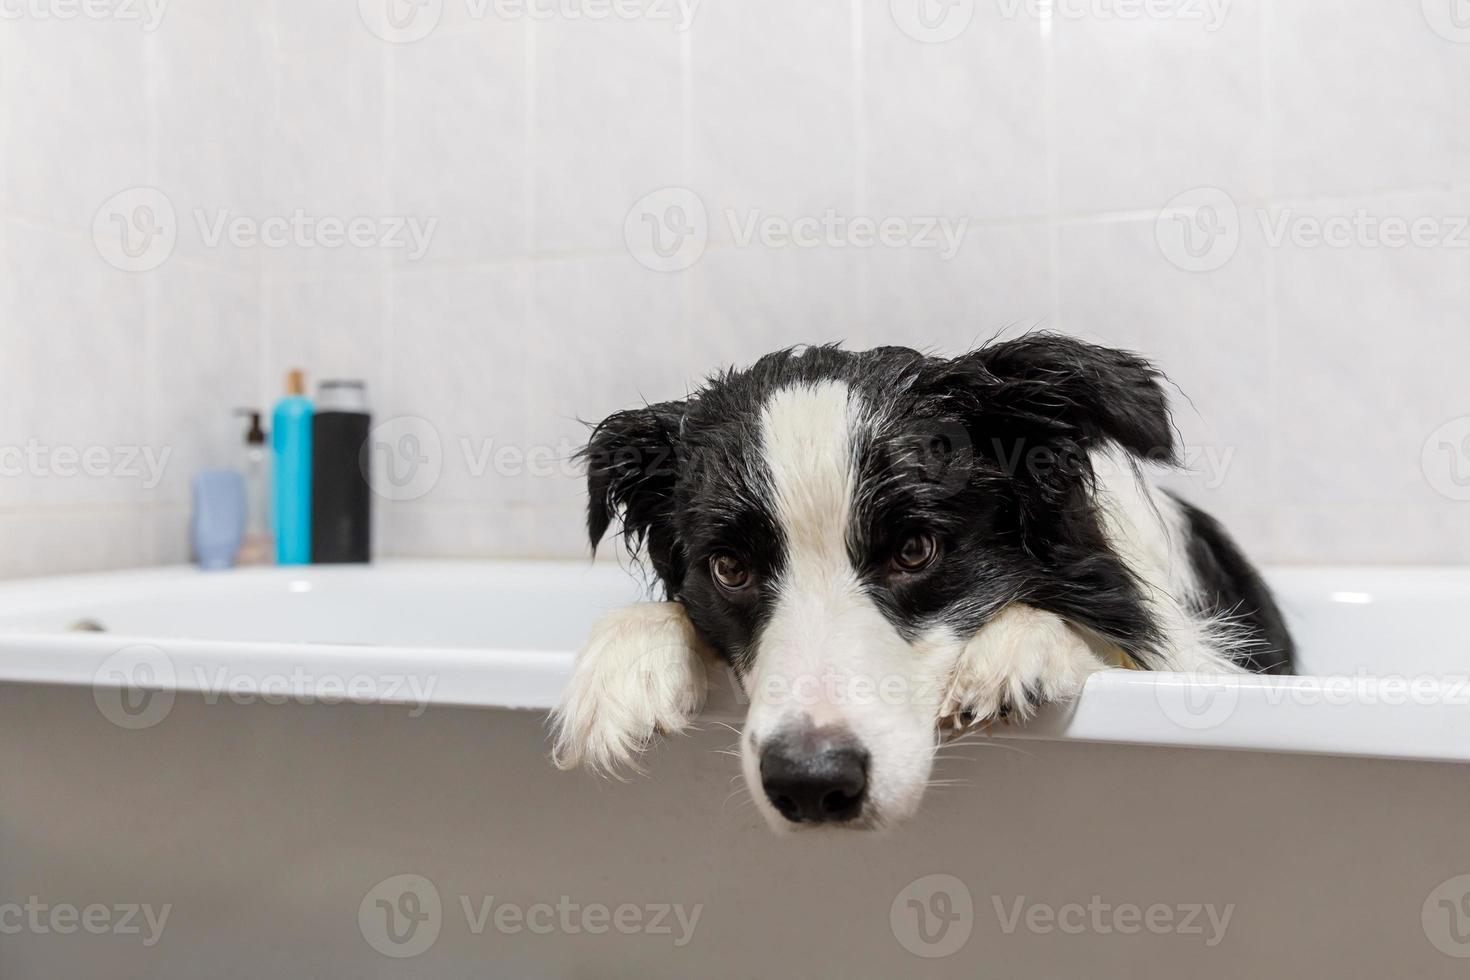 engraçado retrato interior de cachorrinho border collie sentado no banho recebe banho de espuma tomando banho com xampu. lindo cachorrinho molhado na banheira no salão de beleza. cachorro sujo lavando no banheiro. foto